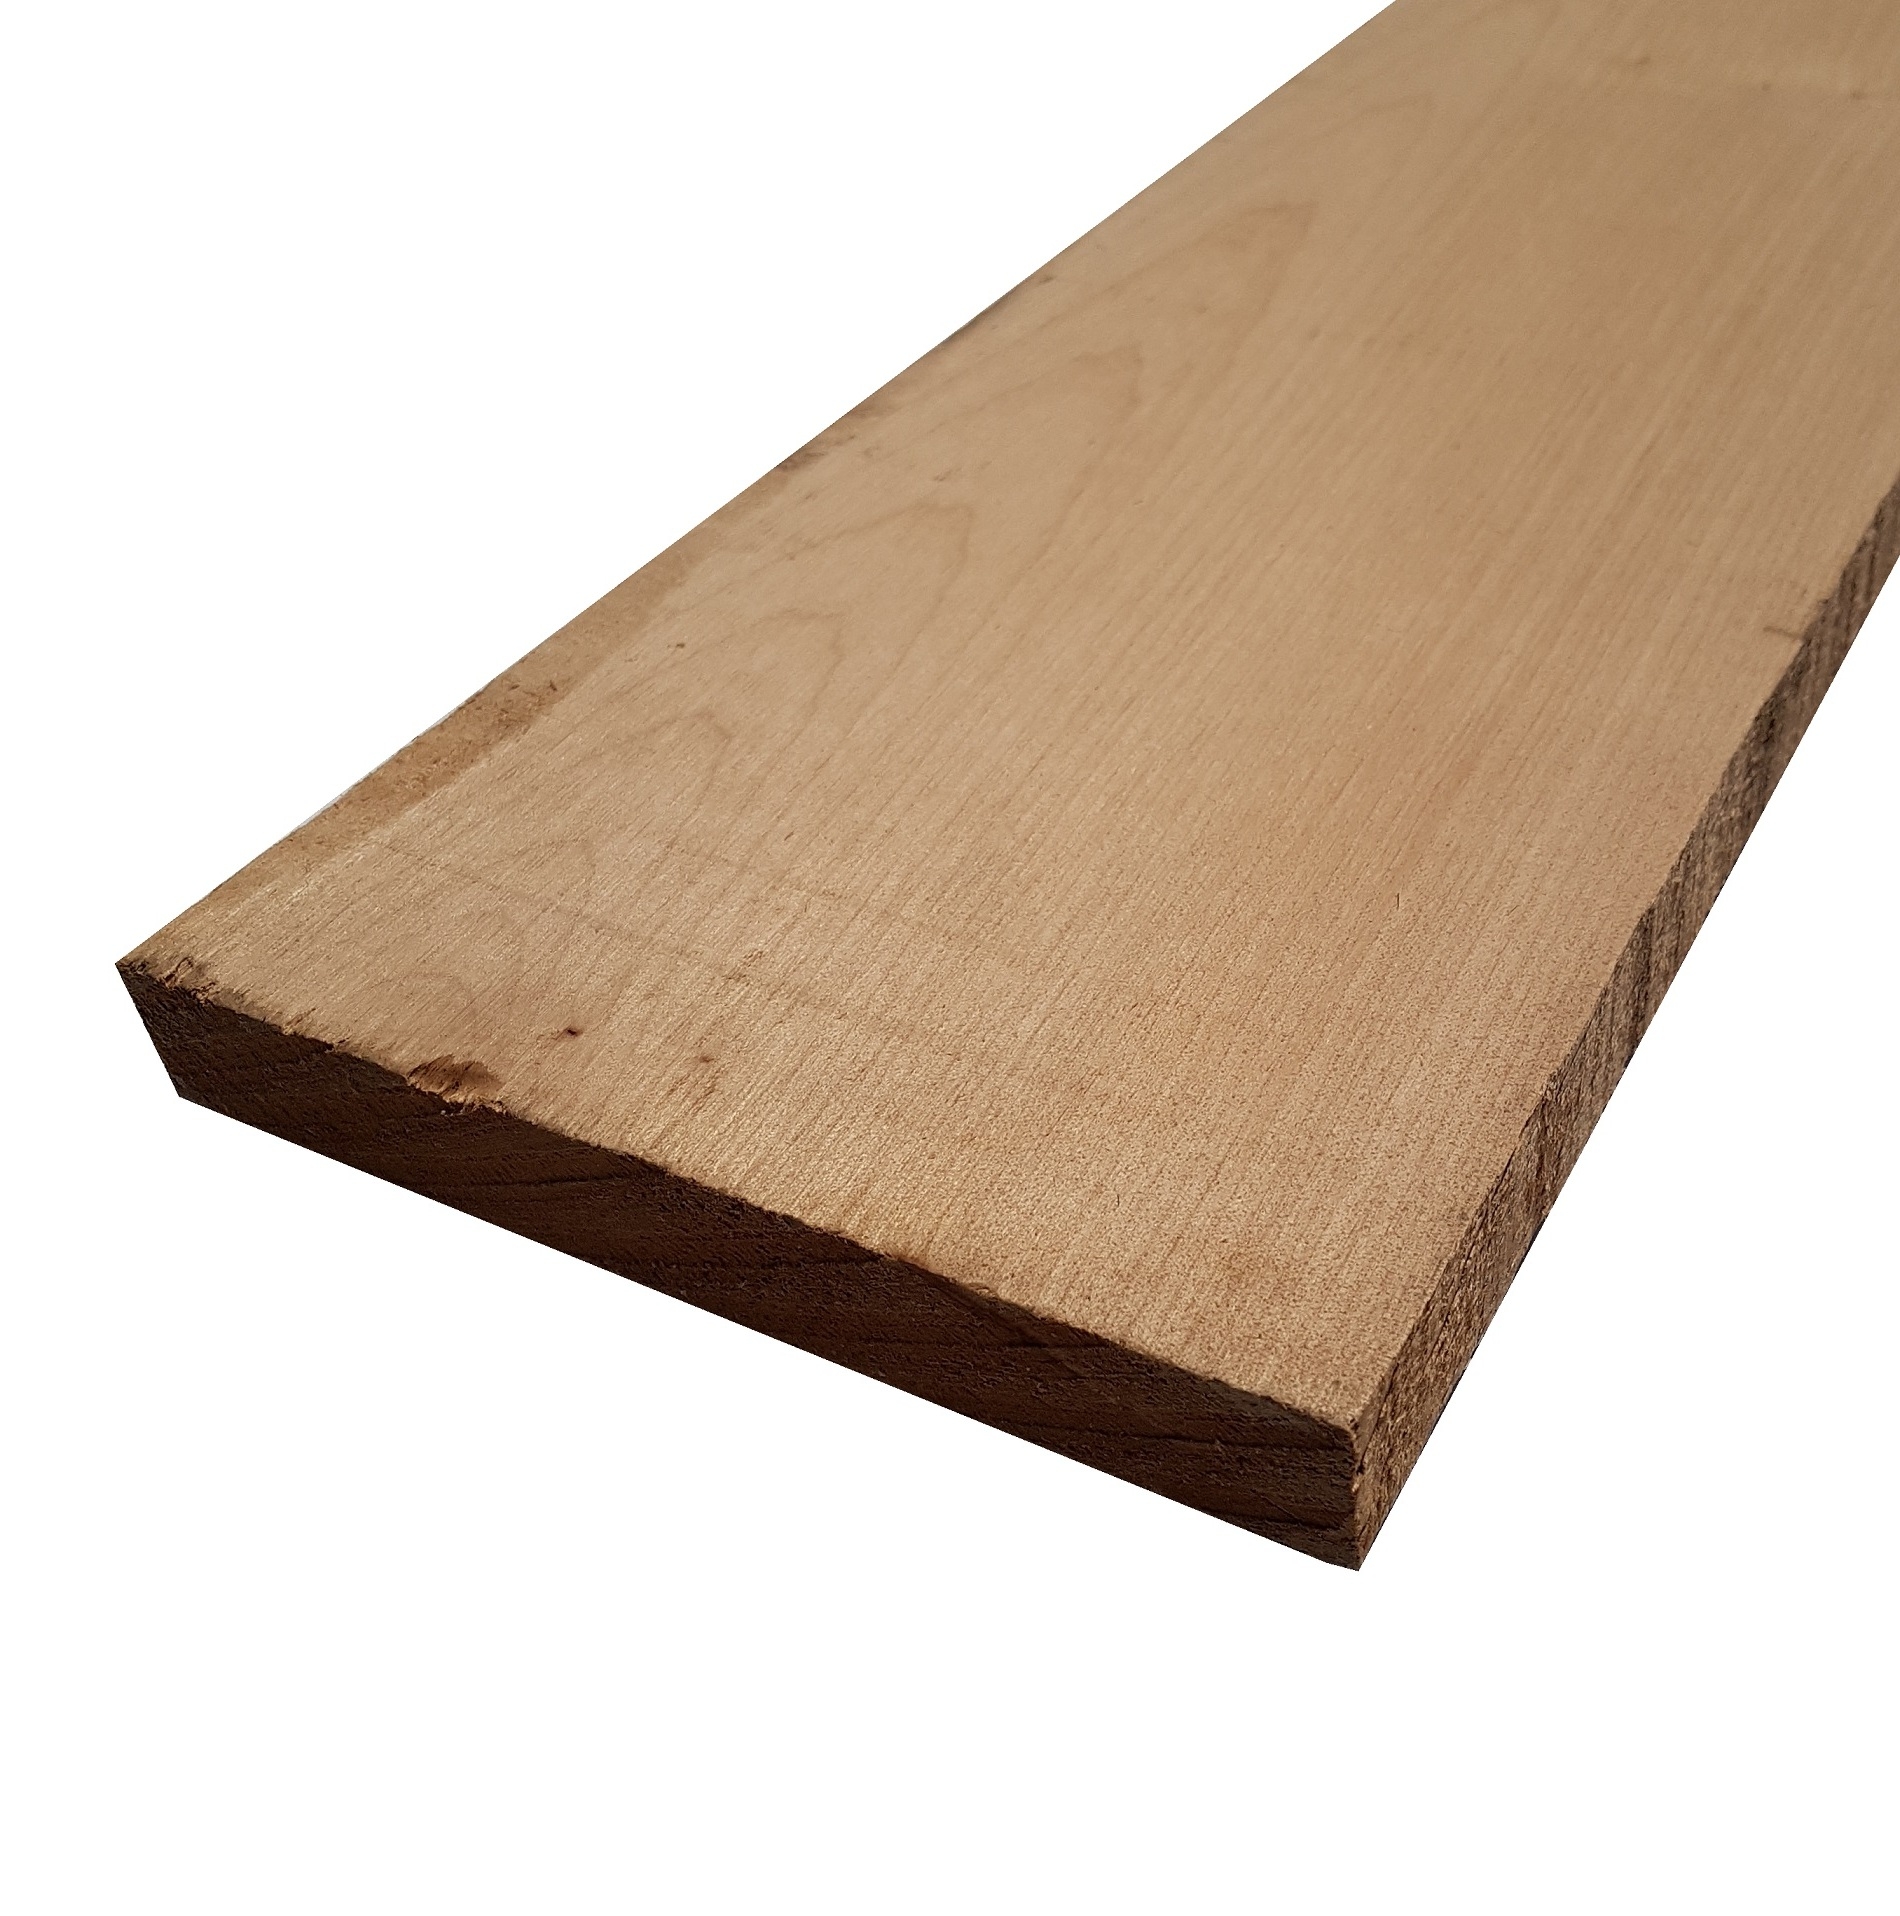 Tavola legno di Acero Pacific Coast Maple Calibrato refilato grezzo mm 24 x 100 x 2100